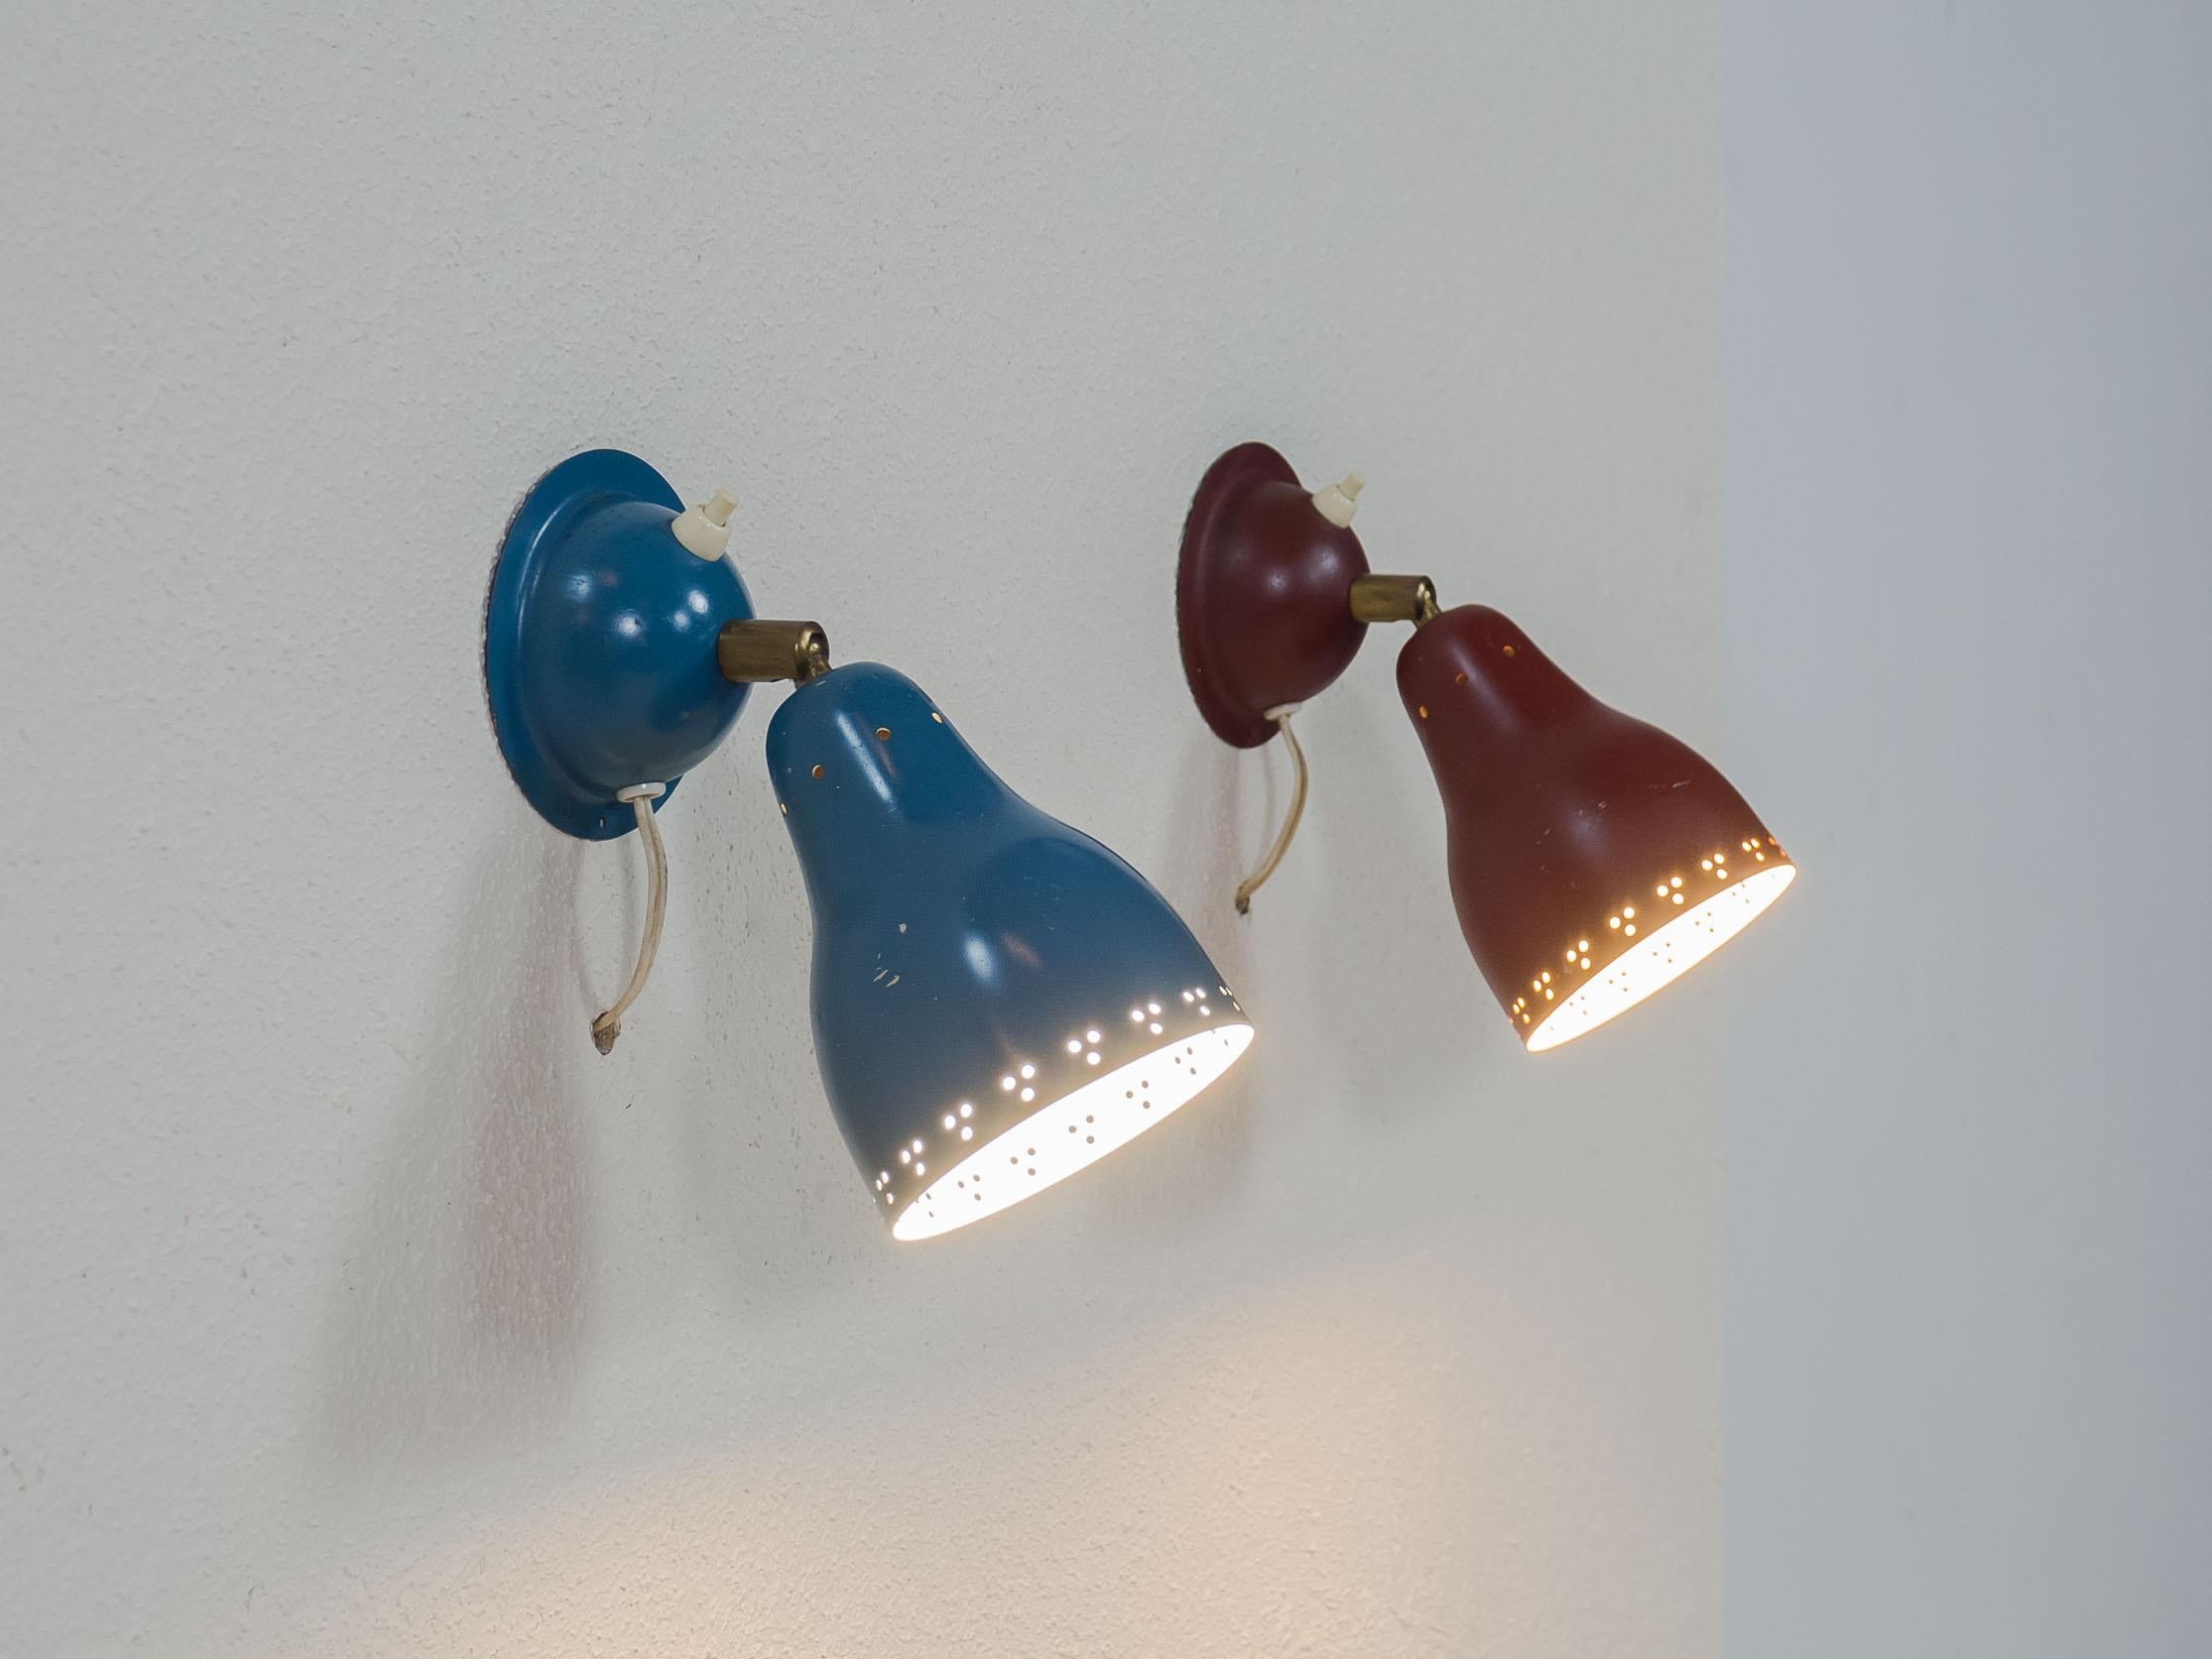 Satz von zwei schwedischen Wandleuchten, wahrscheinlich aus den 1950er Jahren.

Die beiden Lampen sind original blau und rot lackiert und verfügen über die originalen Schalter und Drehgelenke. Sie lassen sich mit einer einzigen Schraube an der Wand